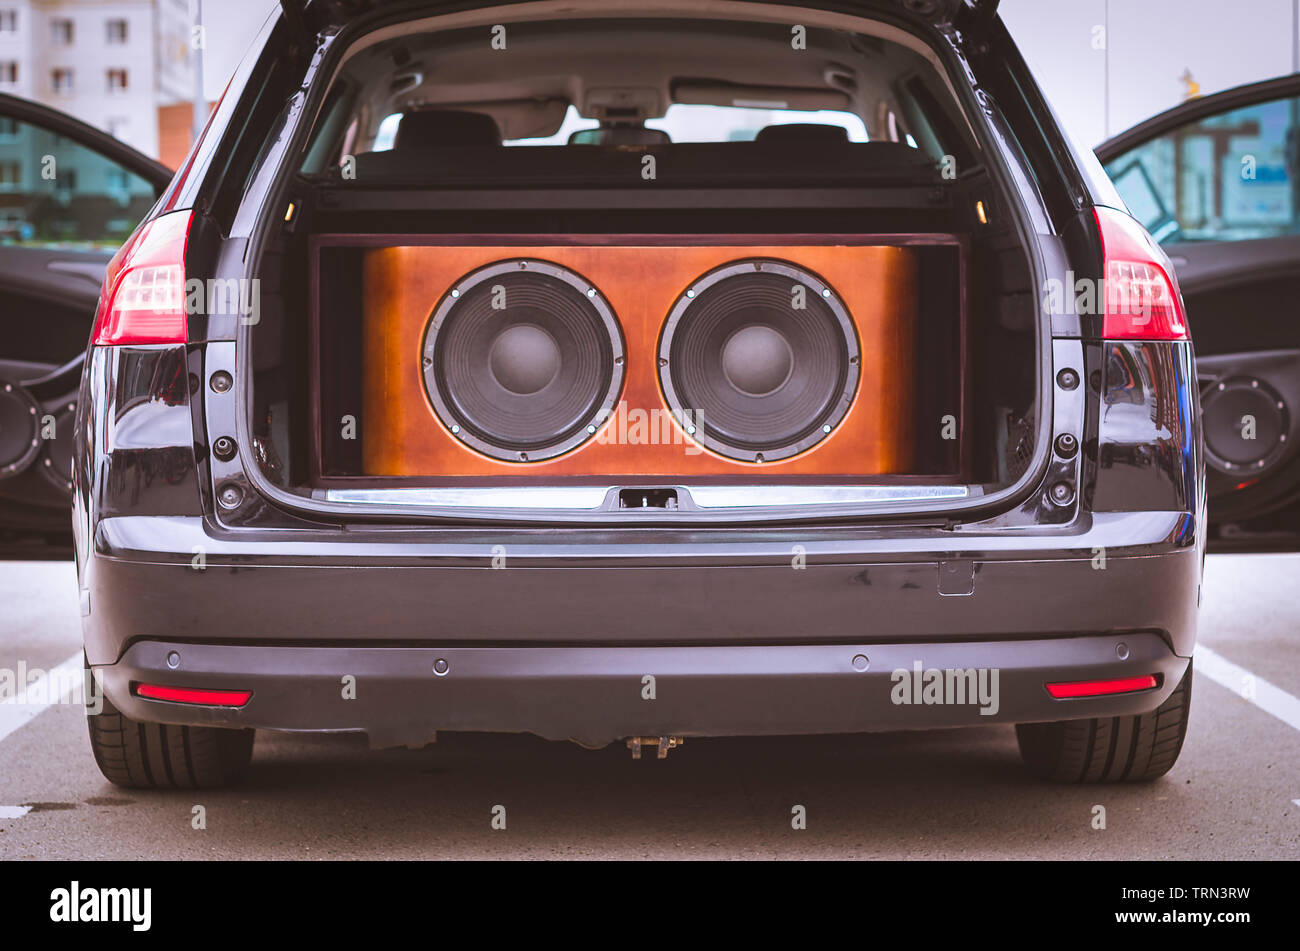 Rückansicht eines Auto, Kofferraum und Vordertüren geöffnet, mit  installierten Car Audio System, Lautsprecher und Subwoofer Lautsprecher in  einer Holzkiste Stockfotografie - Alamy